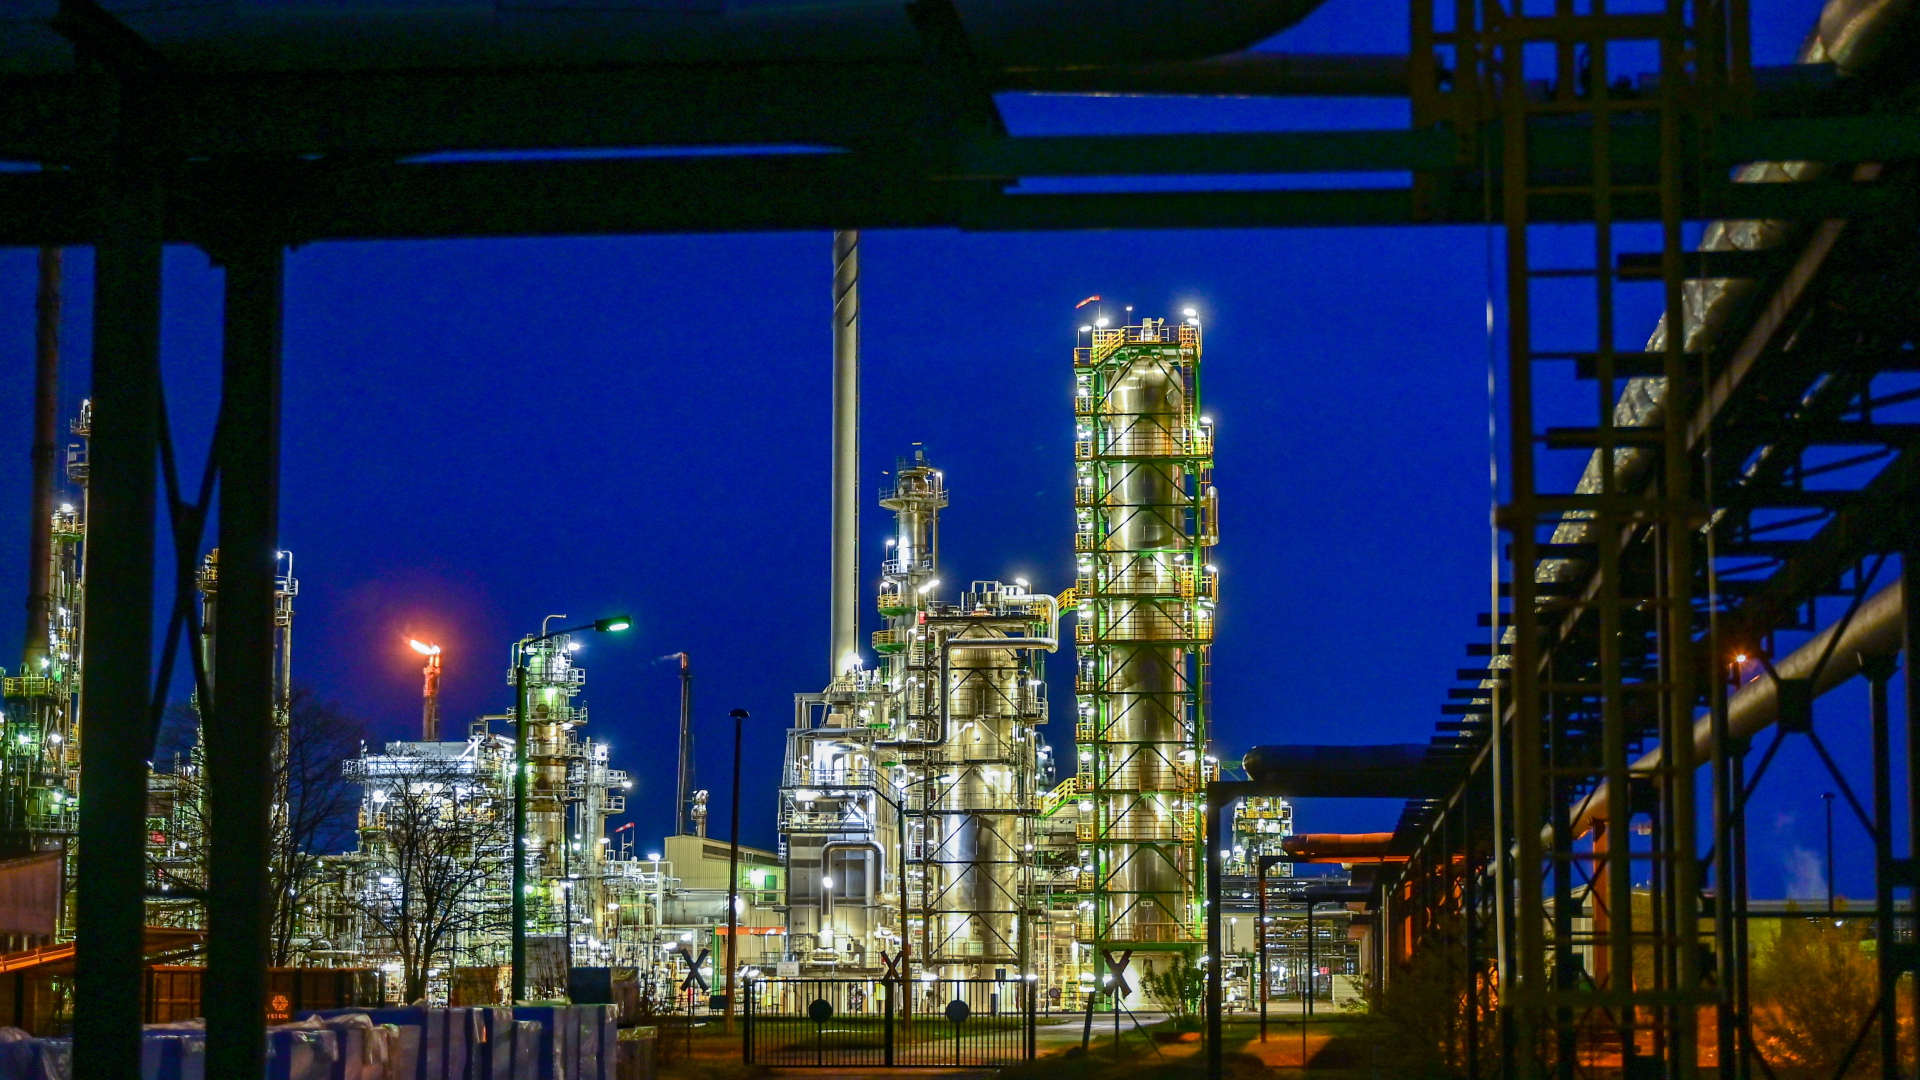 Raffinerie in Schwedt: Polen sagt Öllieferungen via Danzig zu